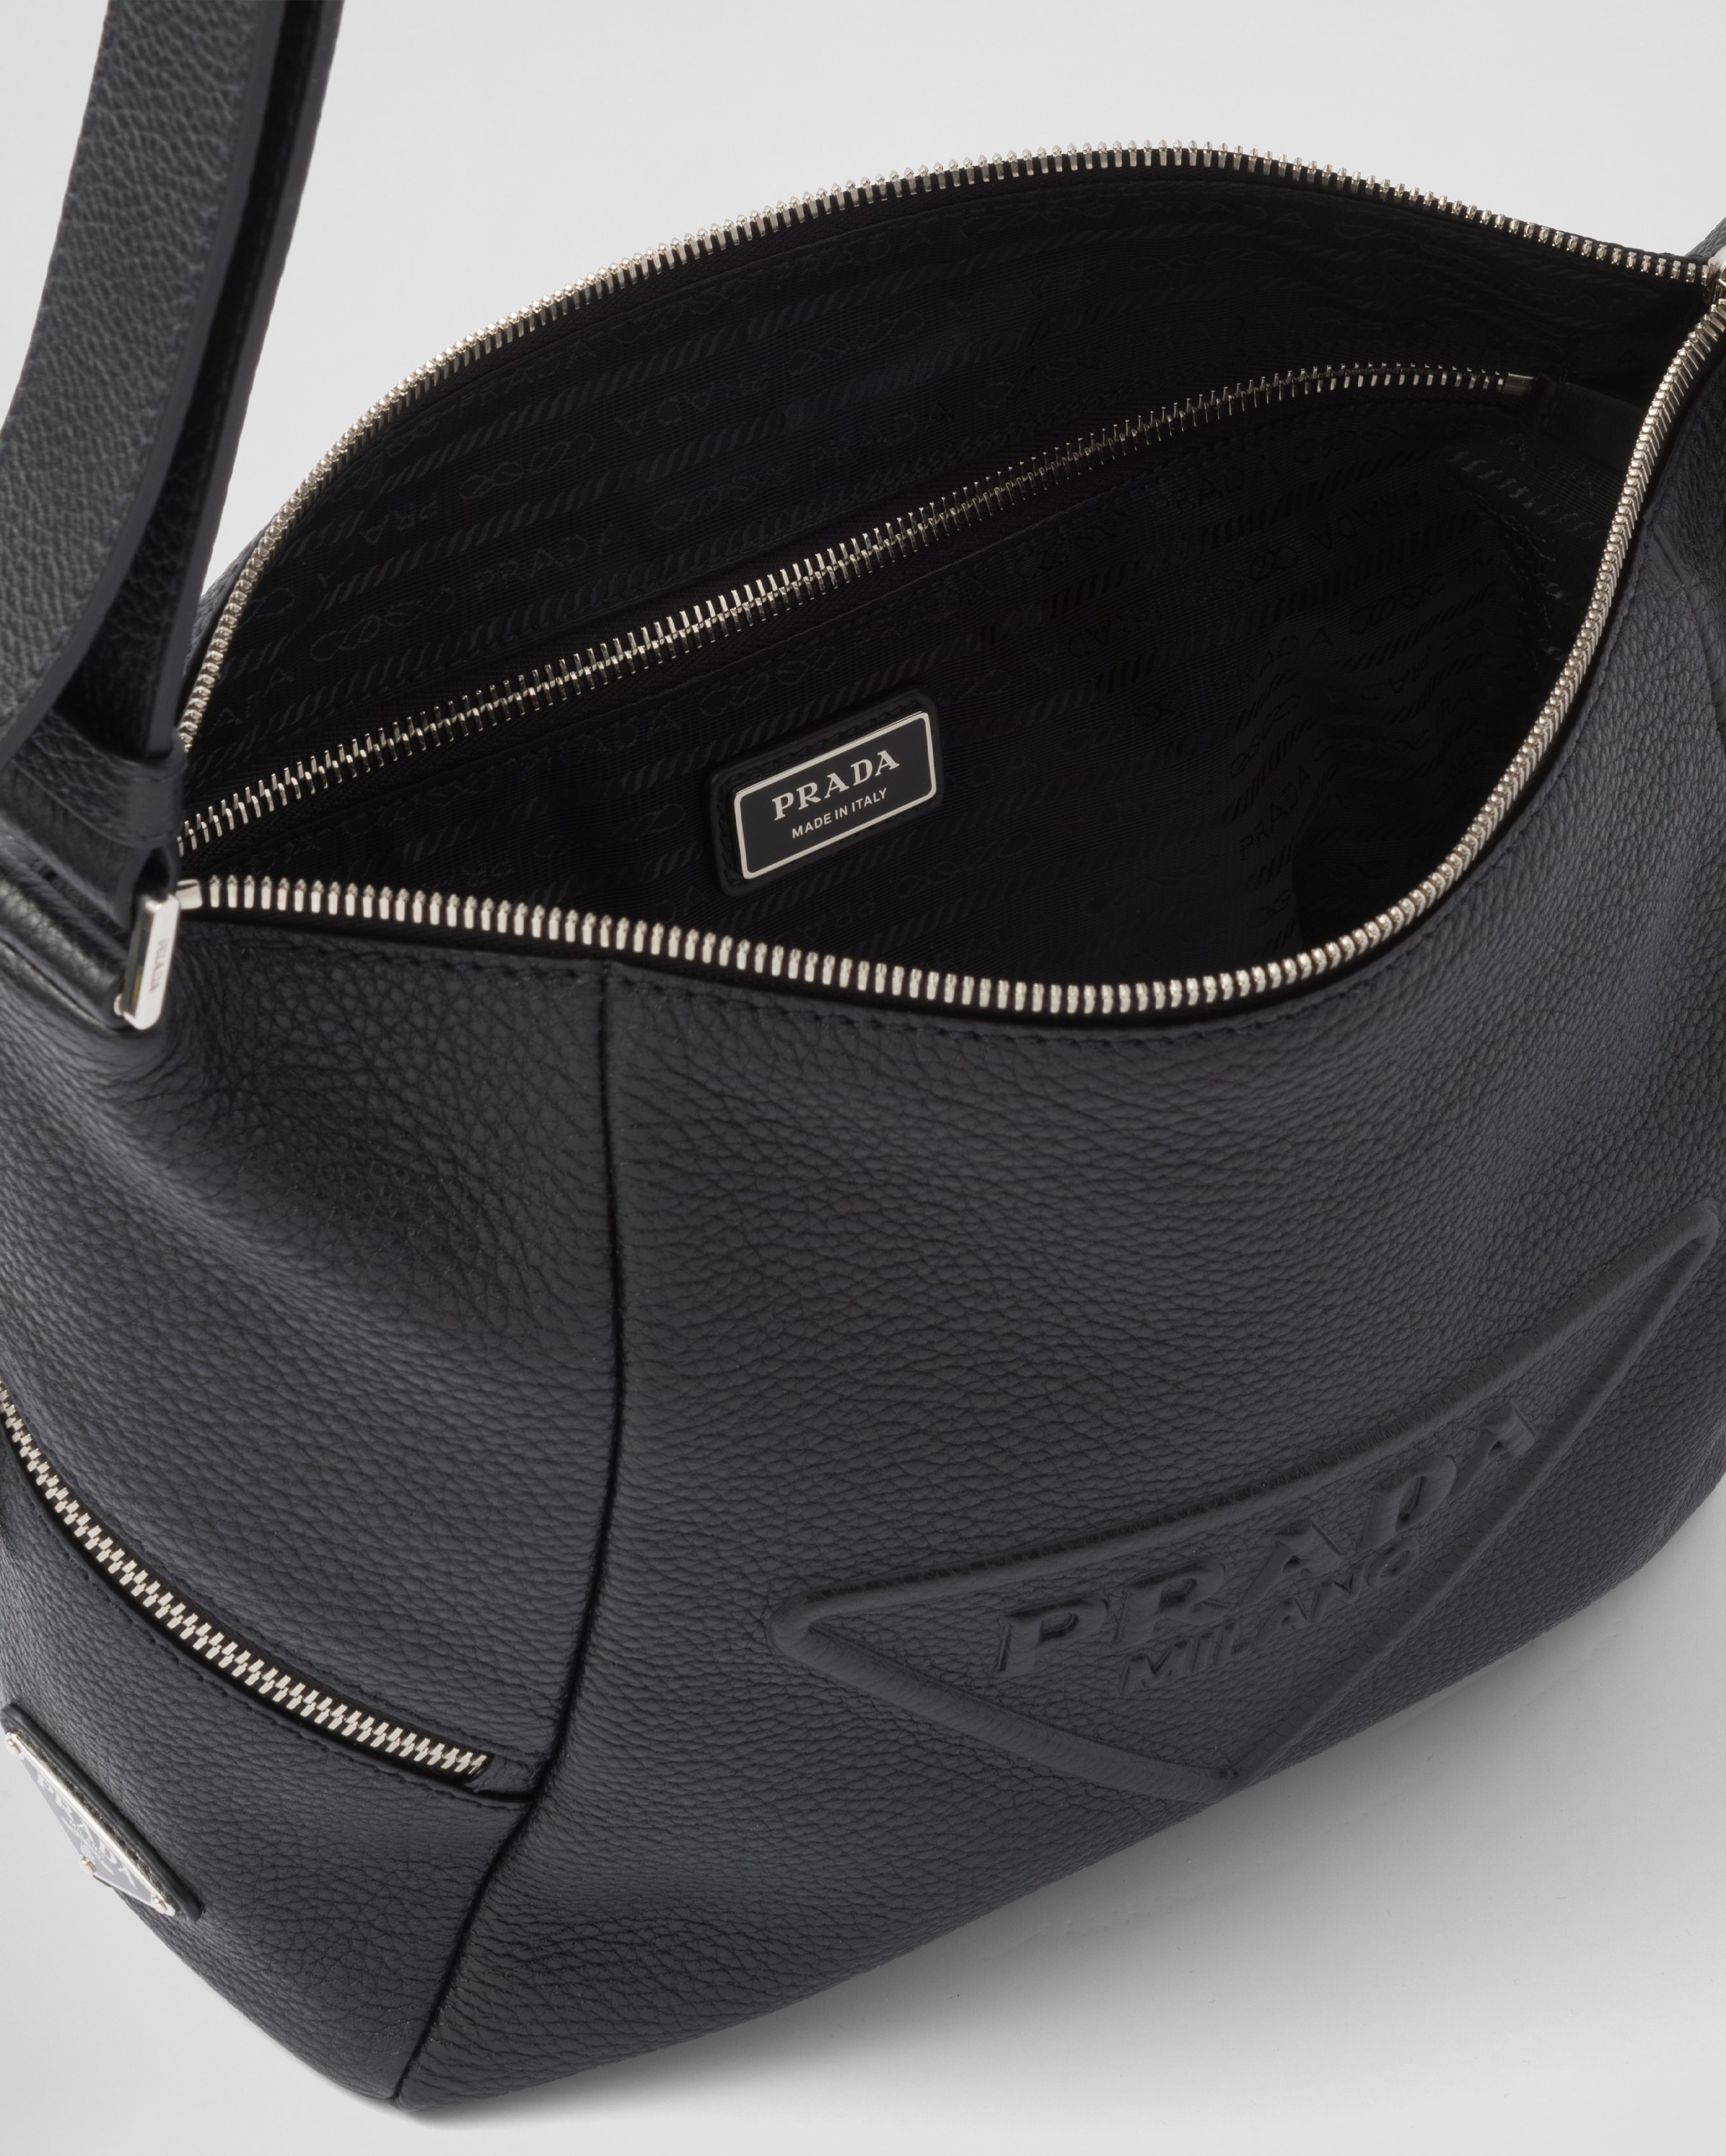 Leather bag with shoulder strap - 5